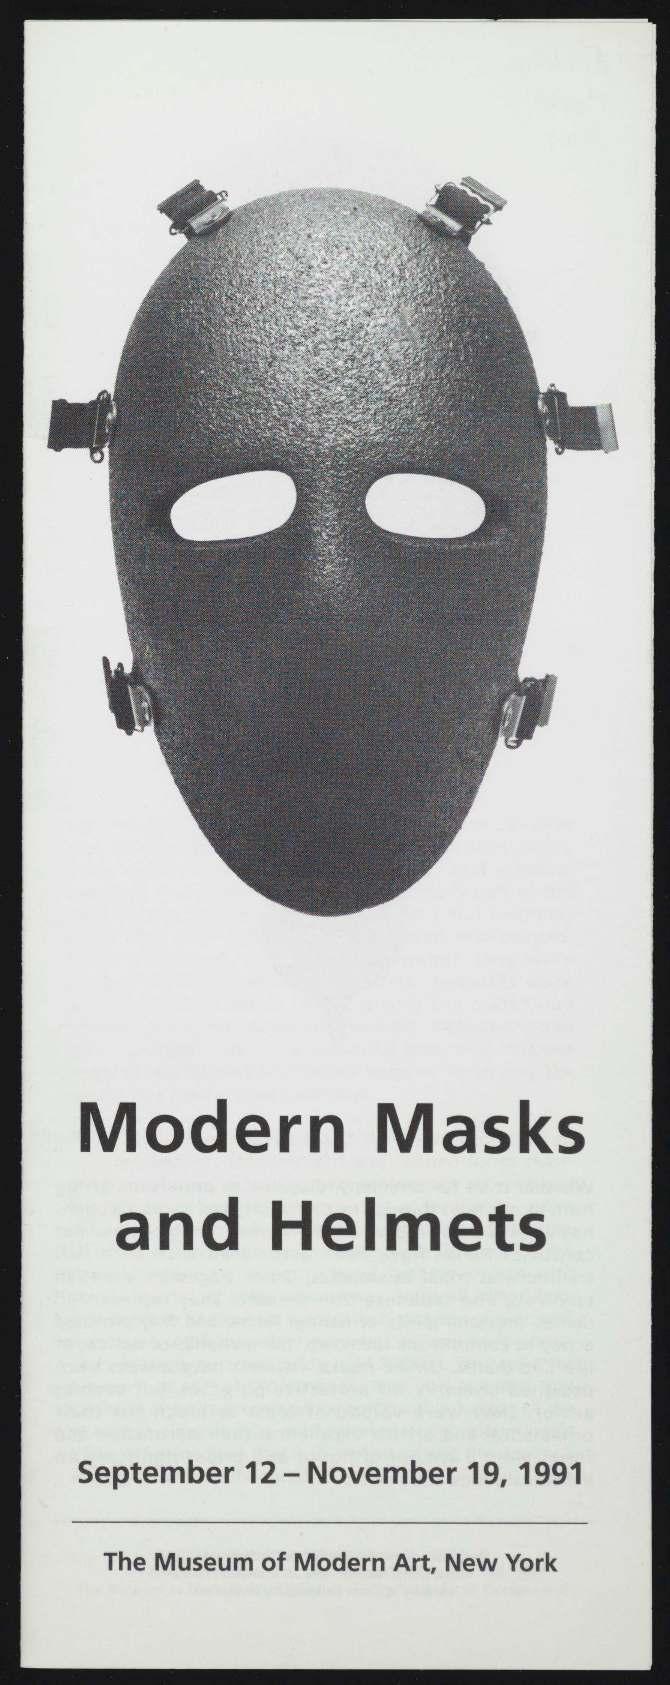 '' Modern Masks and Helmets September